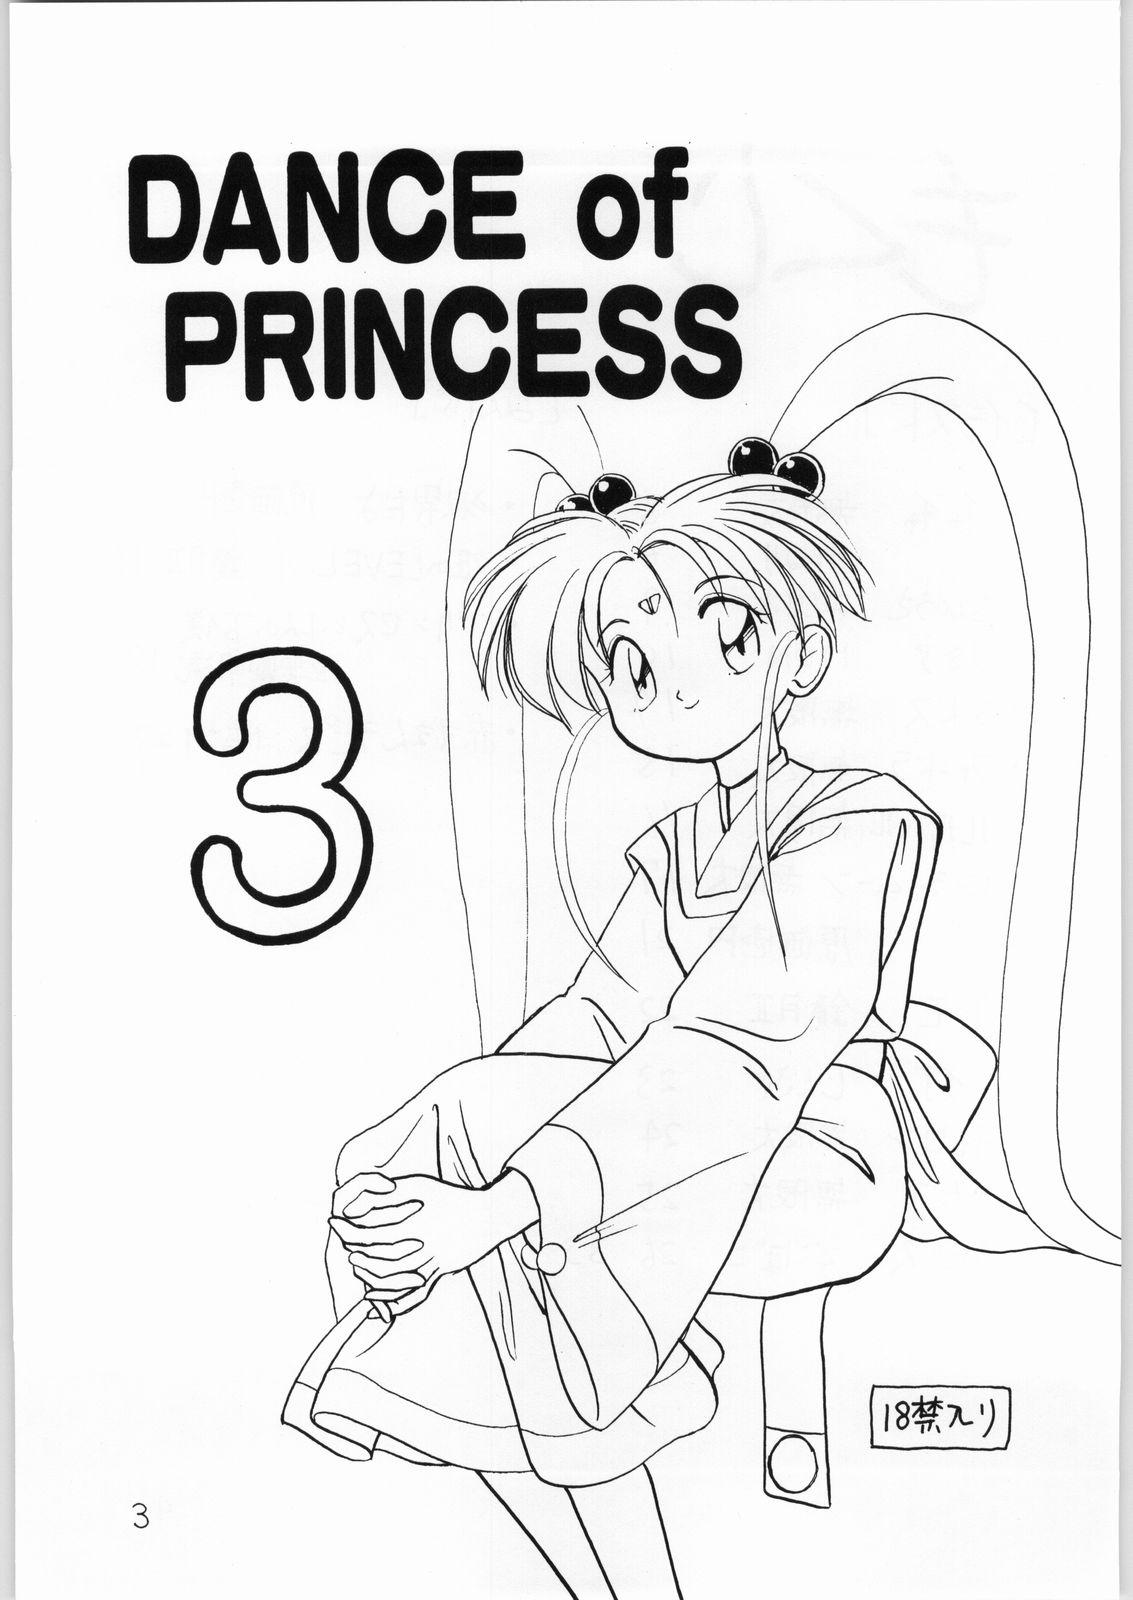 This Dance of Princess 3 - Sailor moon Tenchi muyo Akazukin cha cha Minky momo Ng knight lamune and 40 Teenager - Page 2